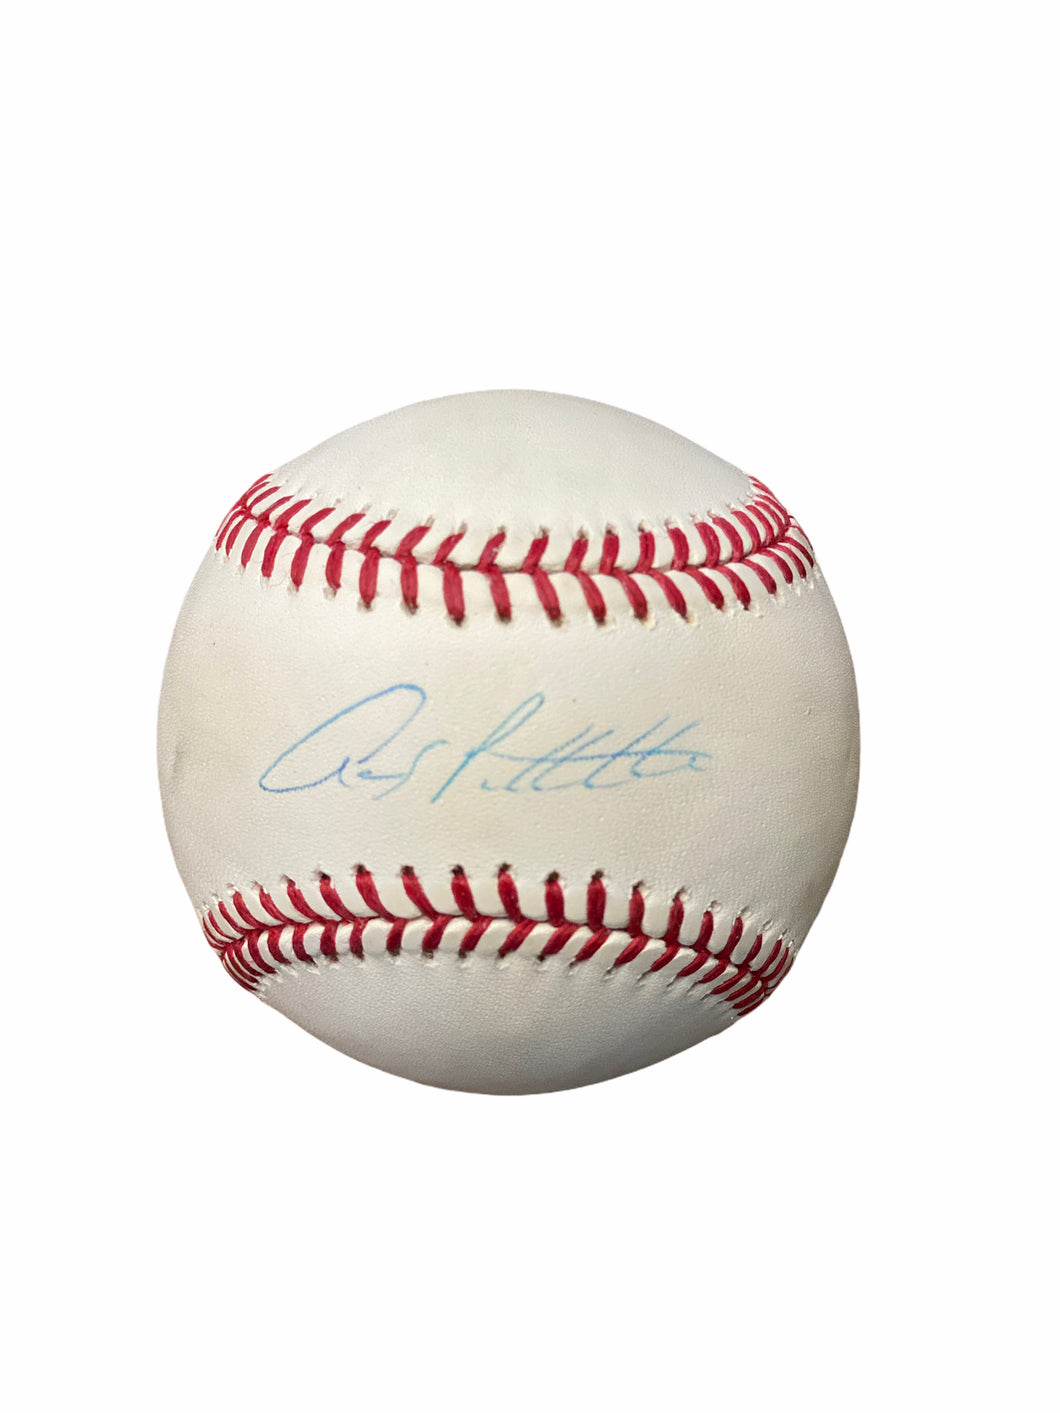 Pelota Baseball / Yankees / Andy Pettitte